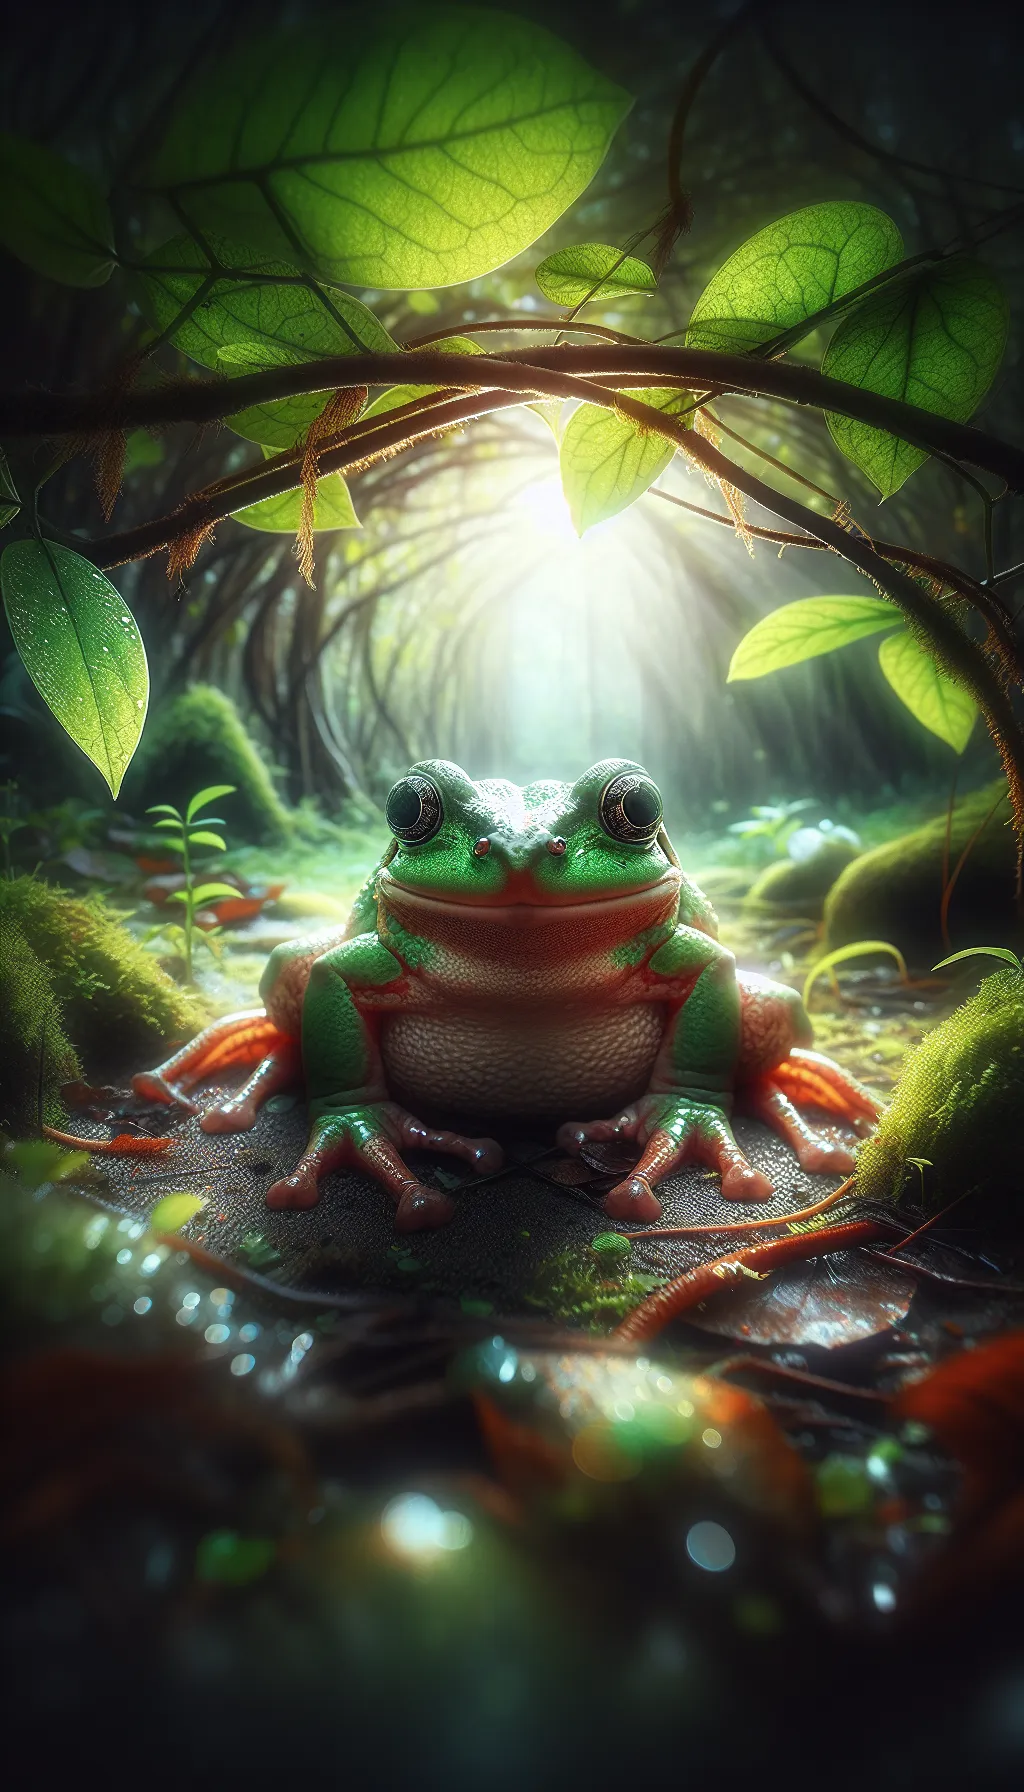 Pig Frog - Animal Matchup